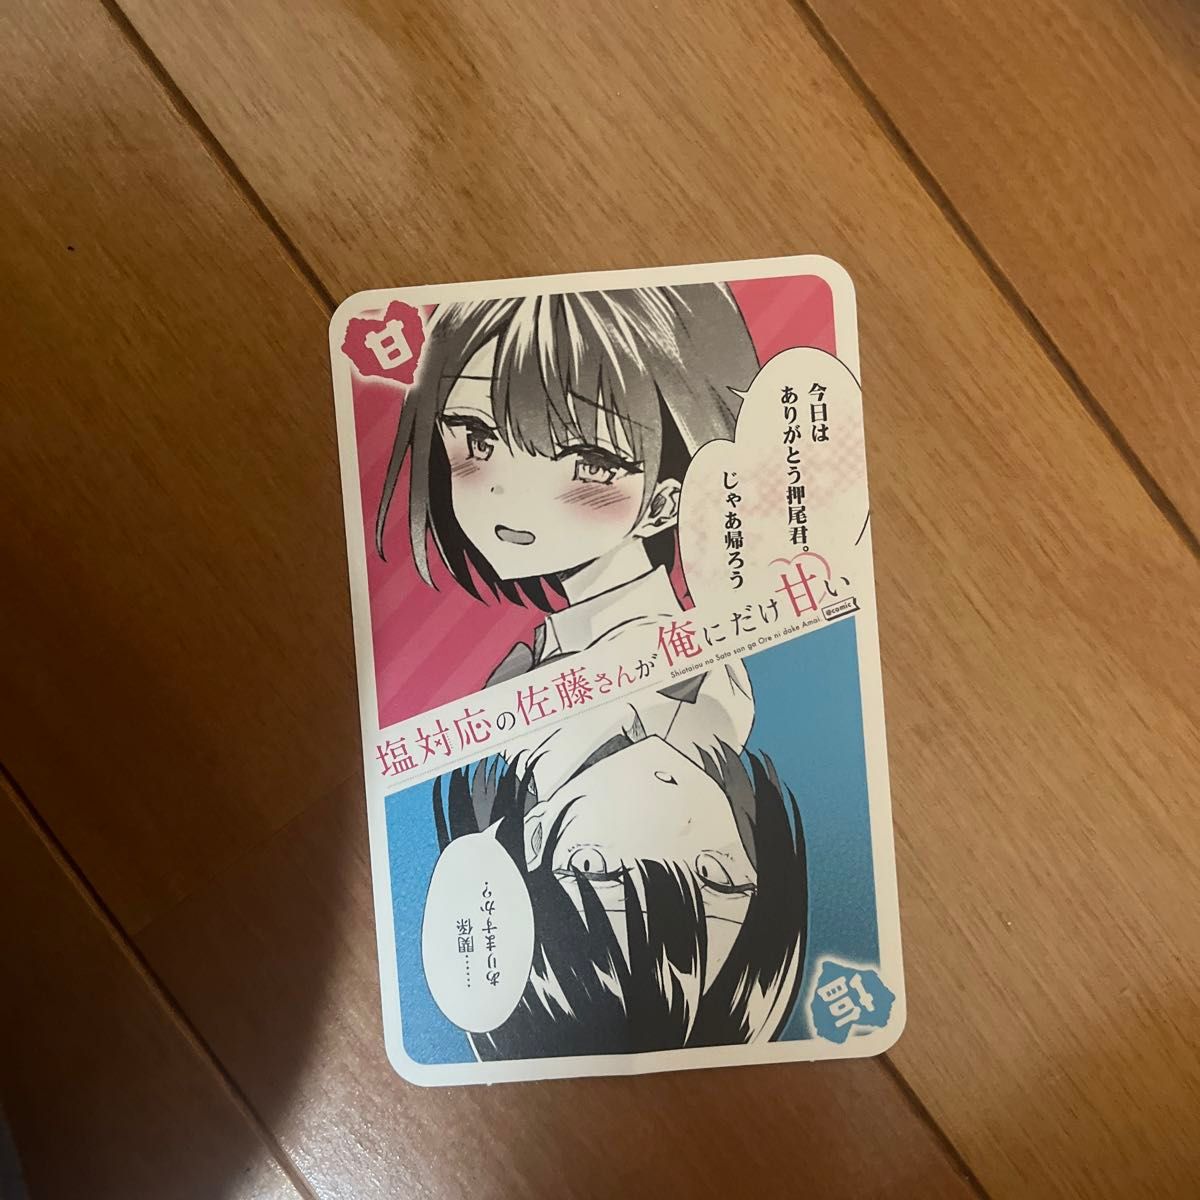 塩対応の佐藤さんが俺にだけ甘い コミックス1 2 3巻セット(+おまけカード付き)